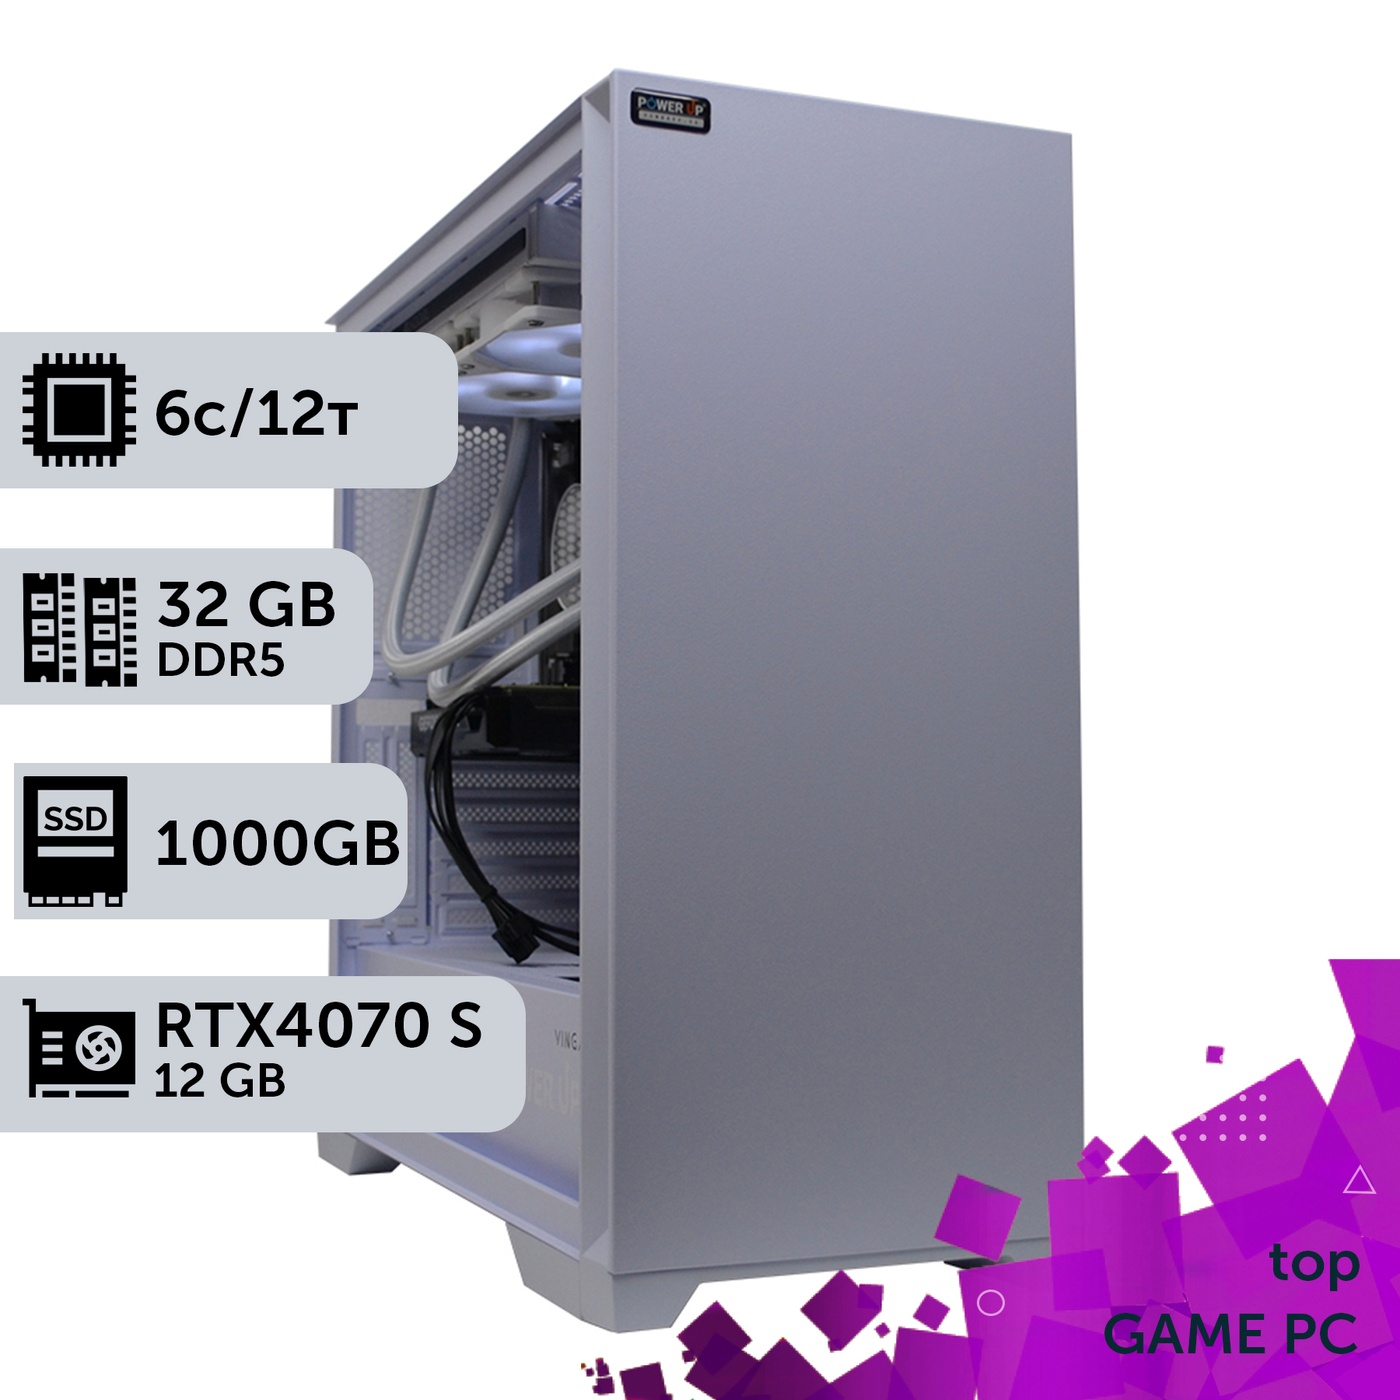 Игровой компьютер GamePC TOP #362 Ryzen 5 7600/32 GB/SSD 1TB/GeForce RTX 4070 Super 12GB